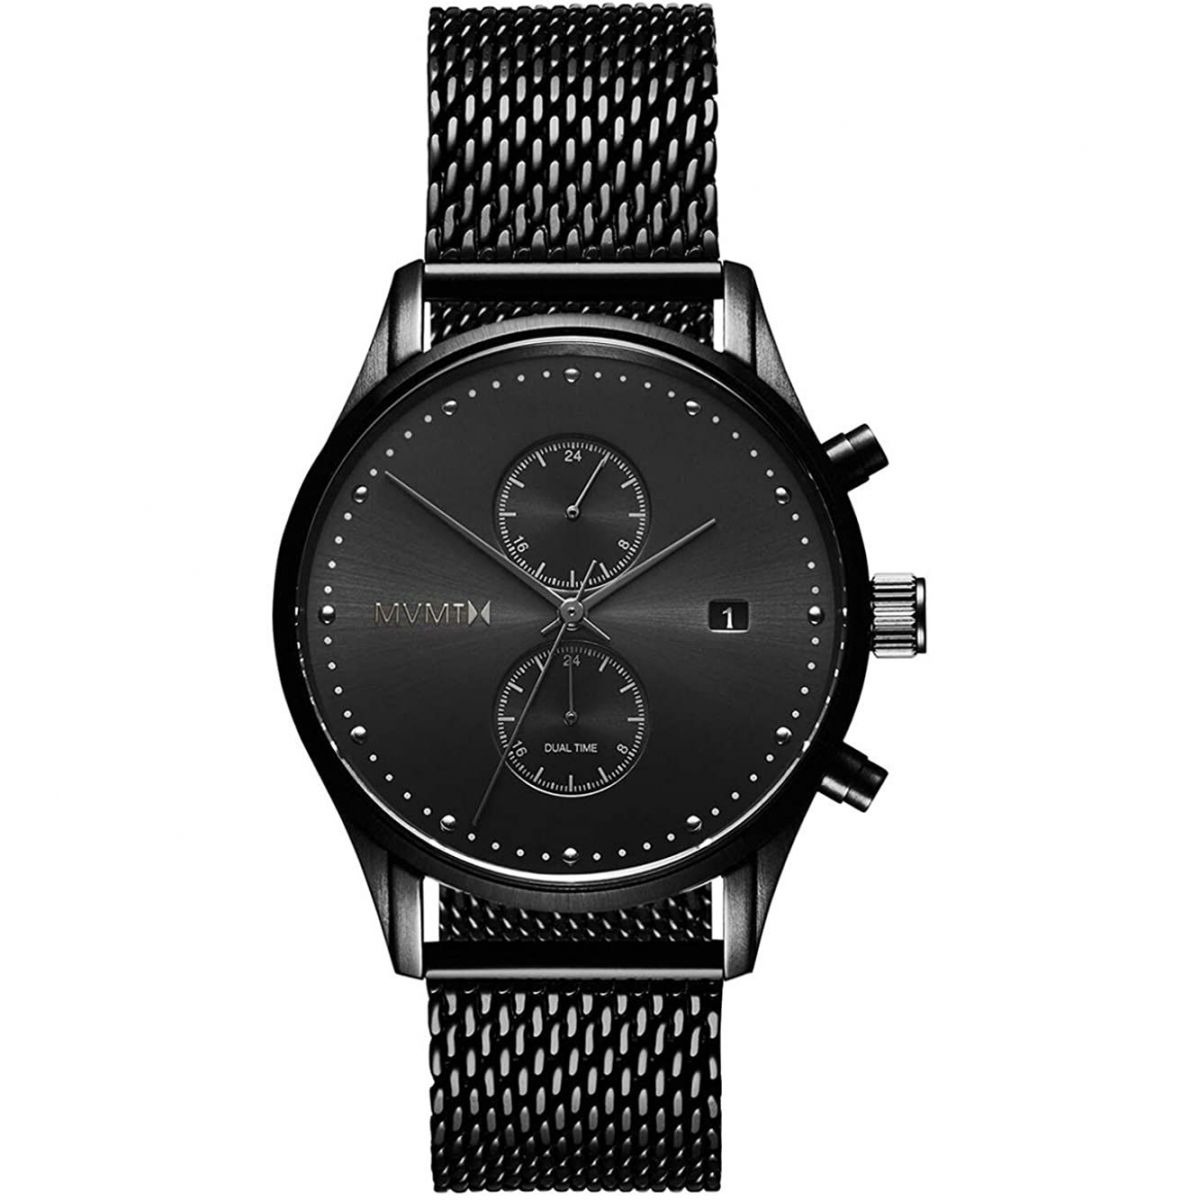 Gents Grey Watch - Watch Shop - Mvmt GOOFASH